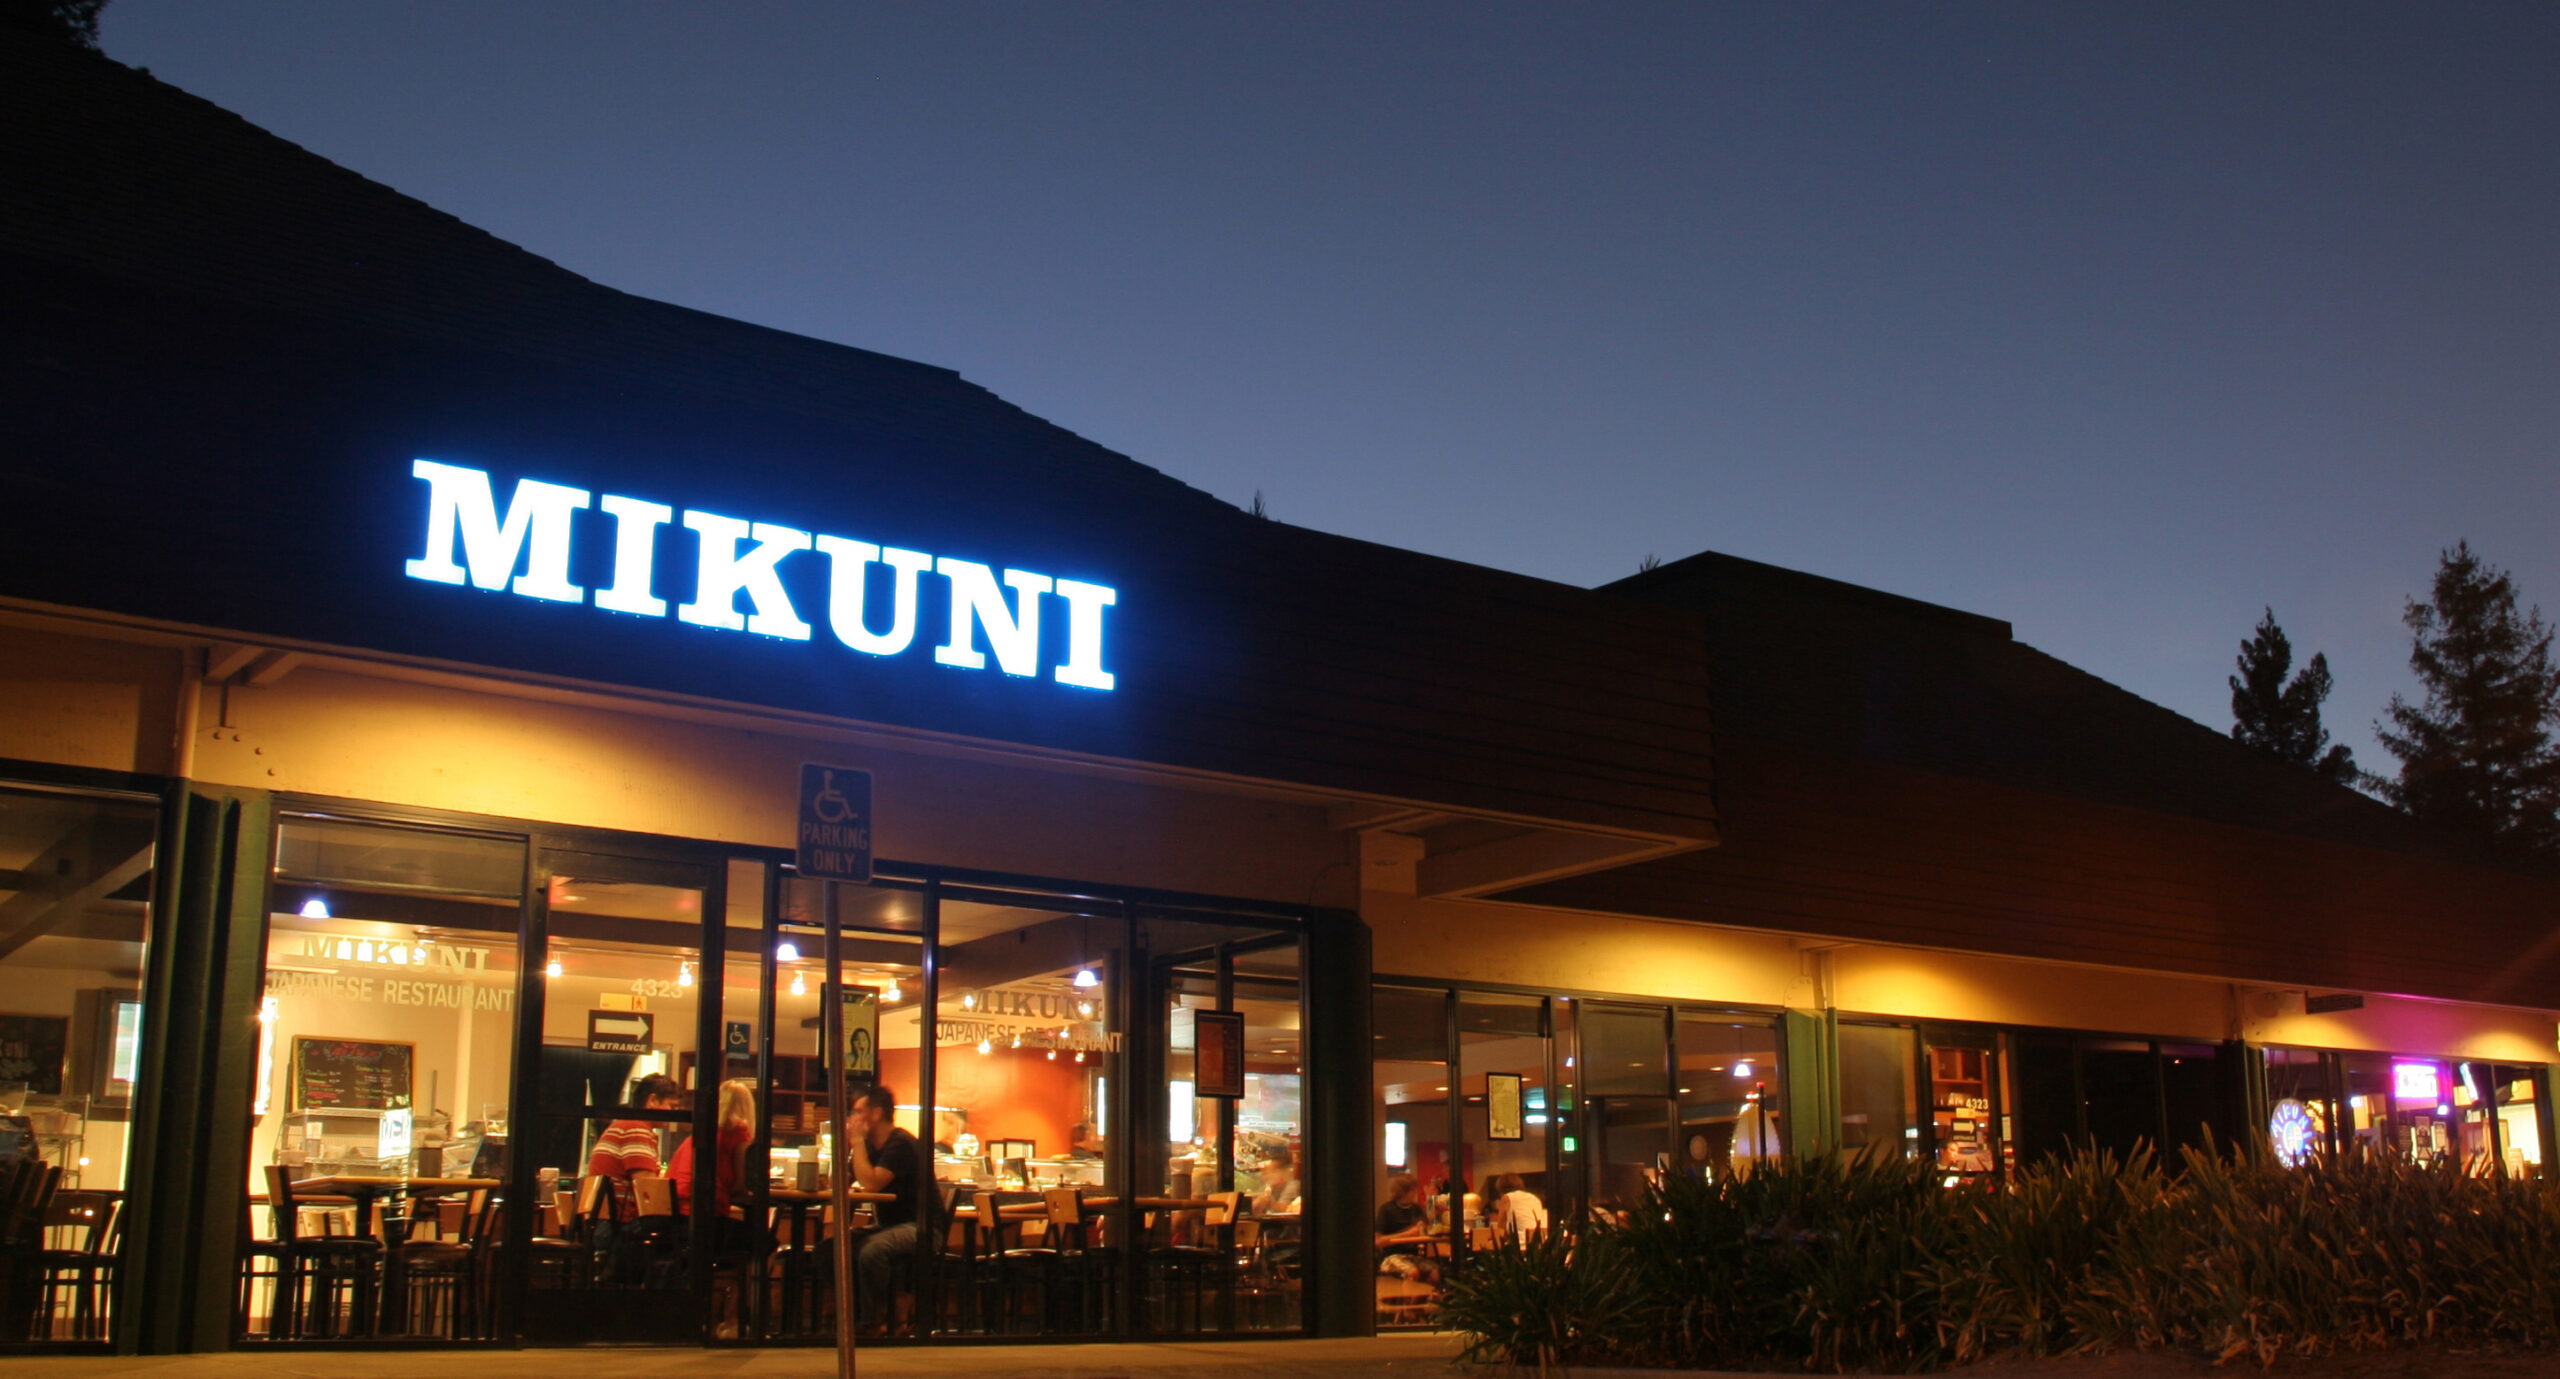 Mikuni restaurant exterior night